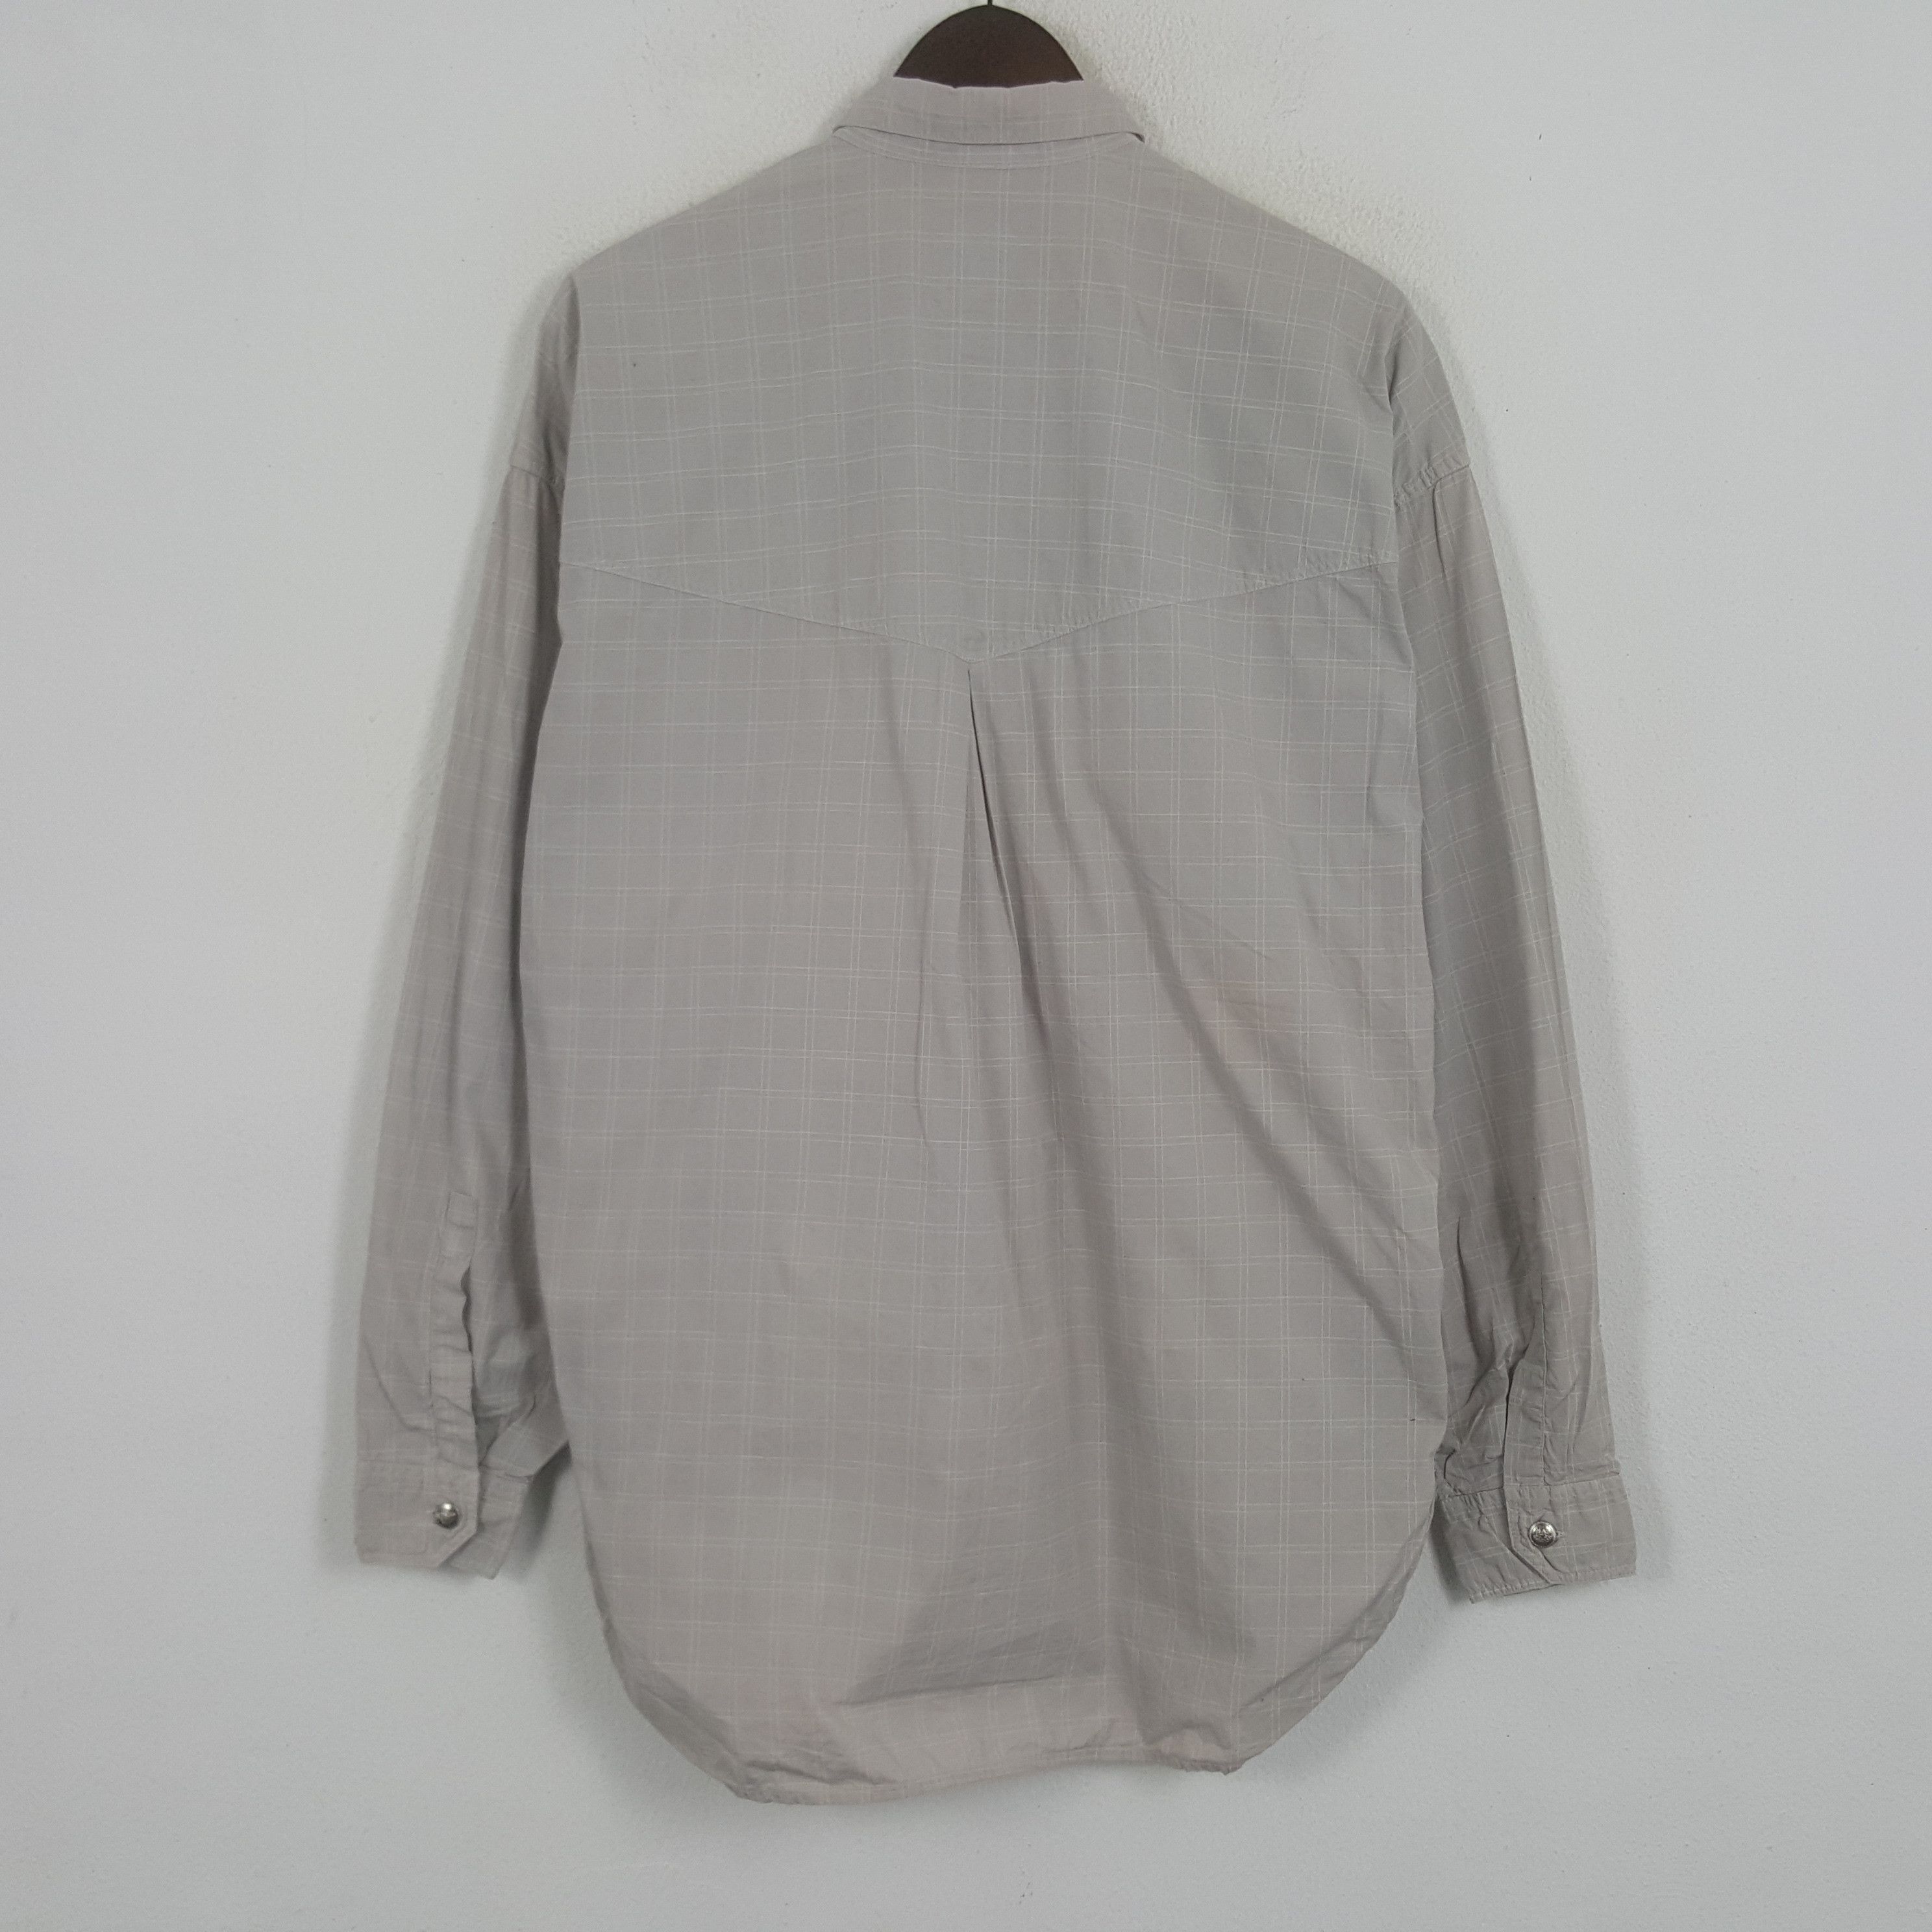 Vintage Vintage Versace Worker Button Up Shirt Size US L / EU 52-54 / 3 - 3 Thumbnail